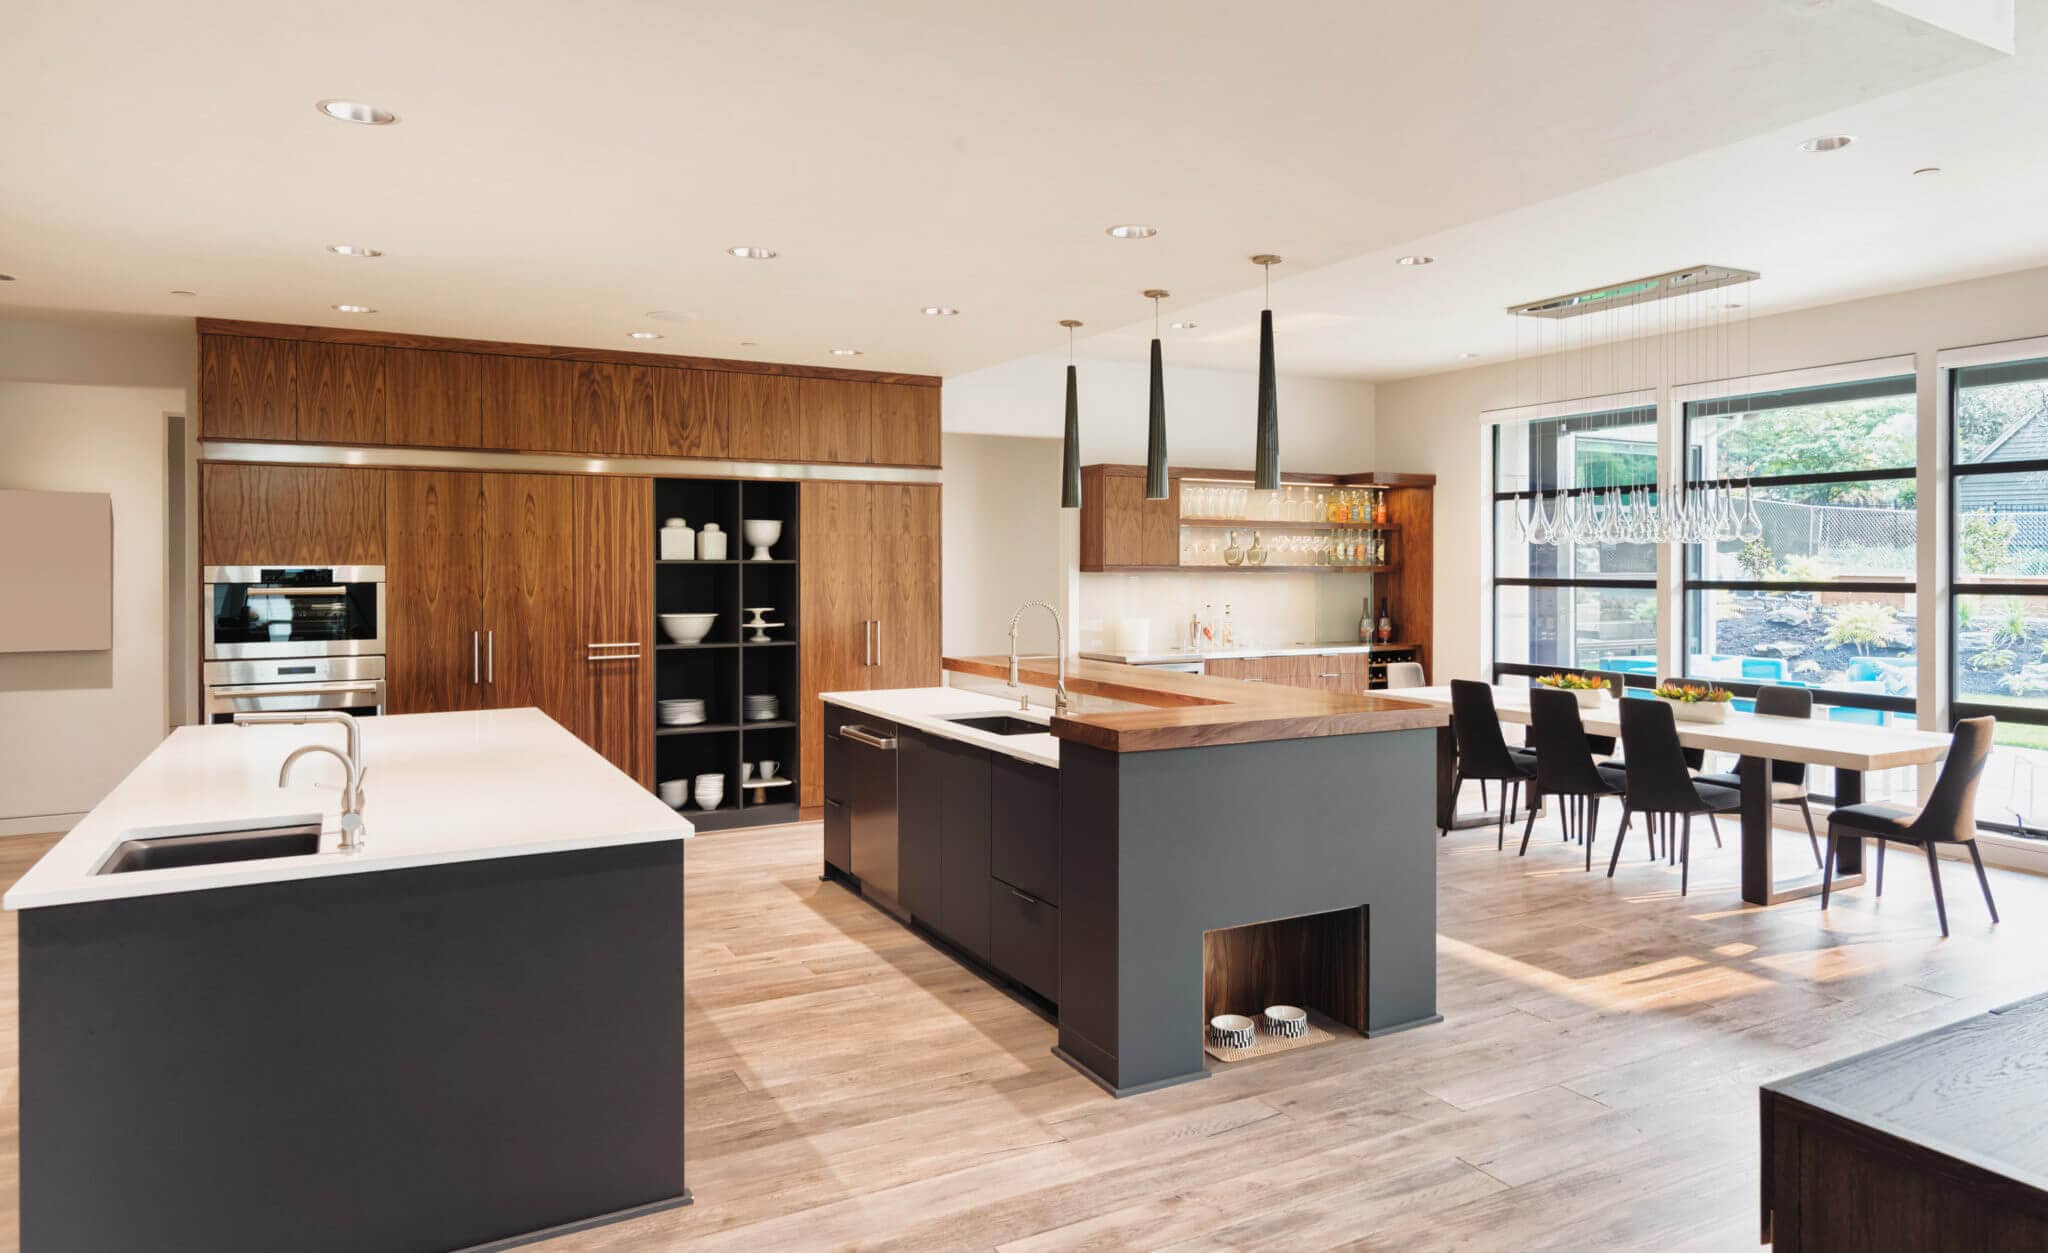 Kitchen Interior in New Luxury Home